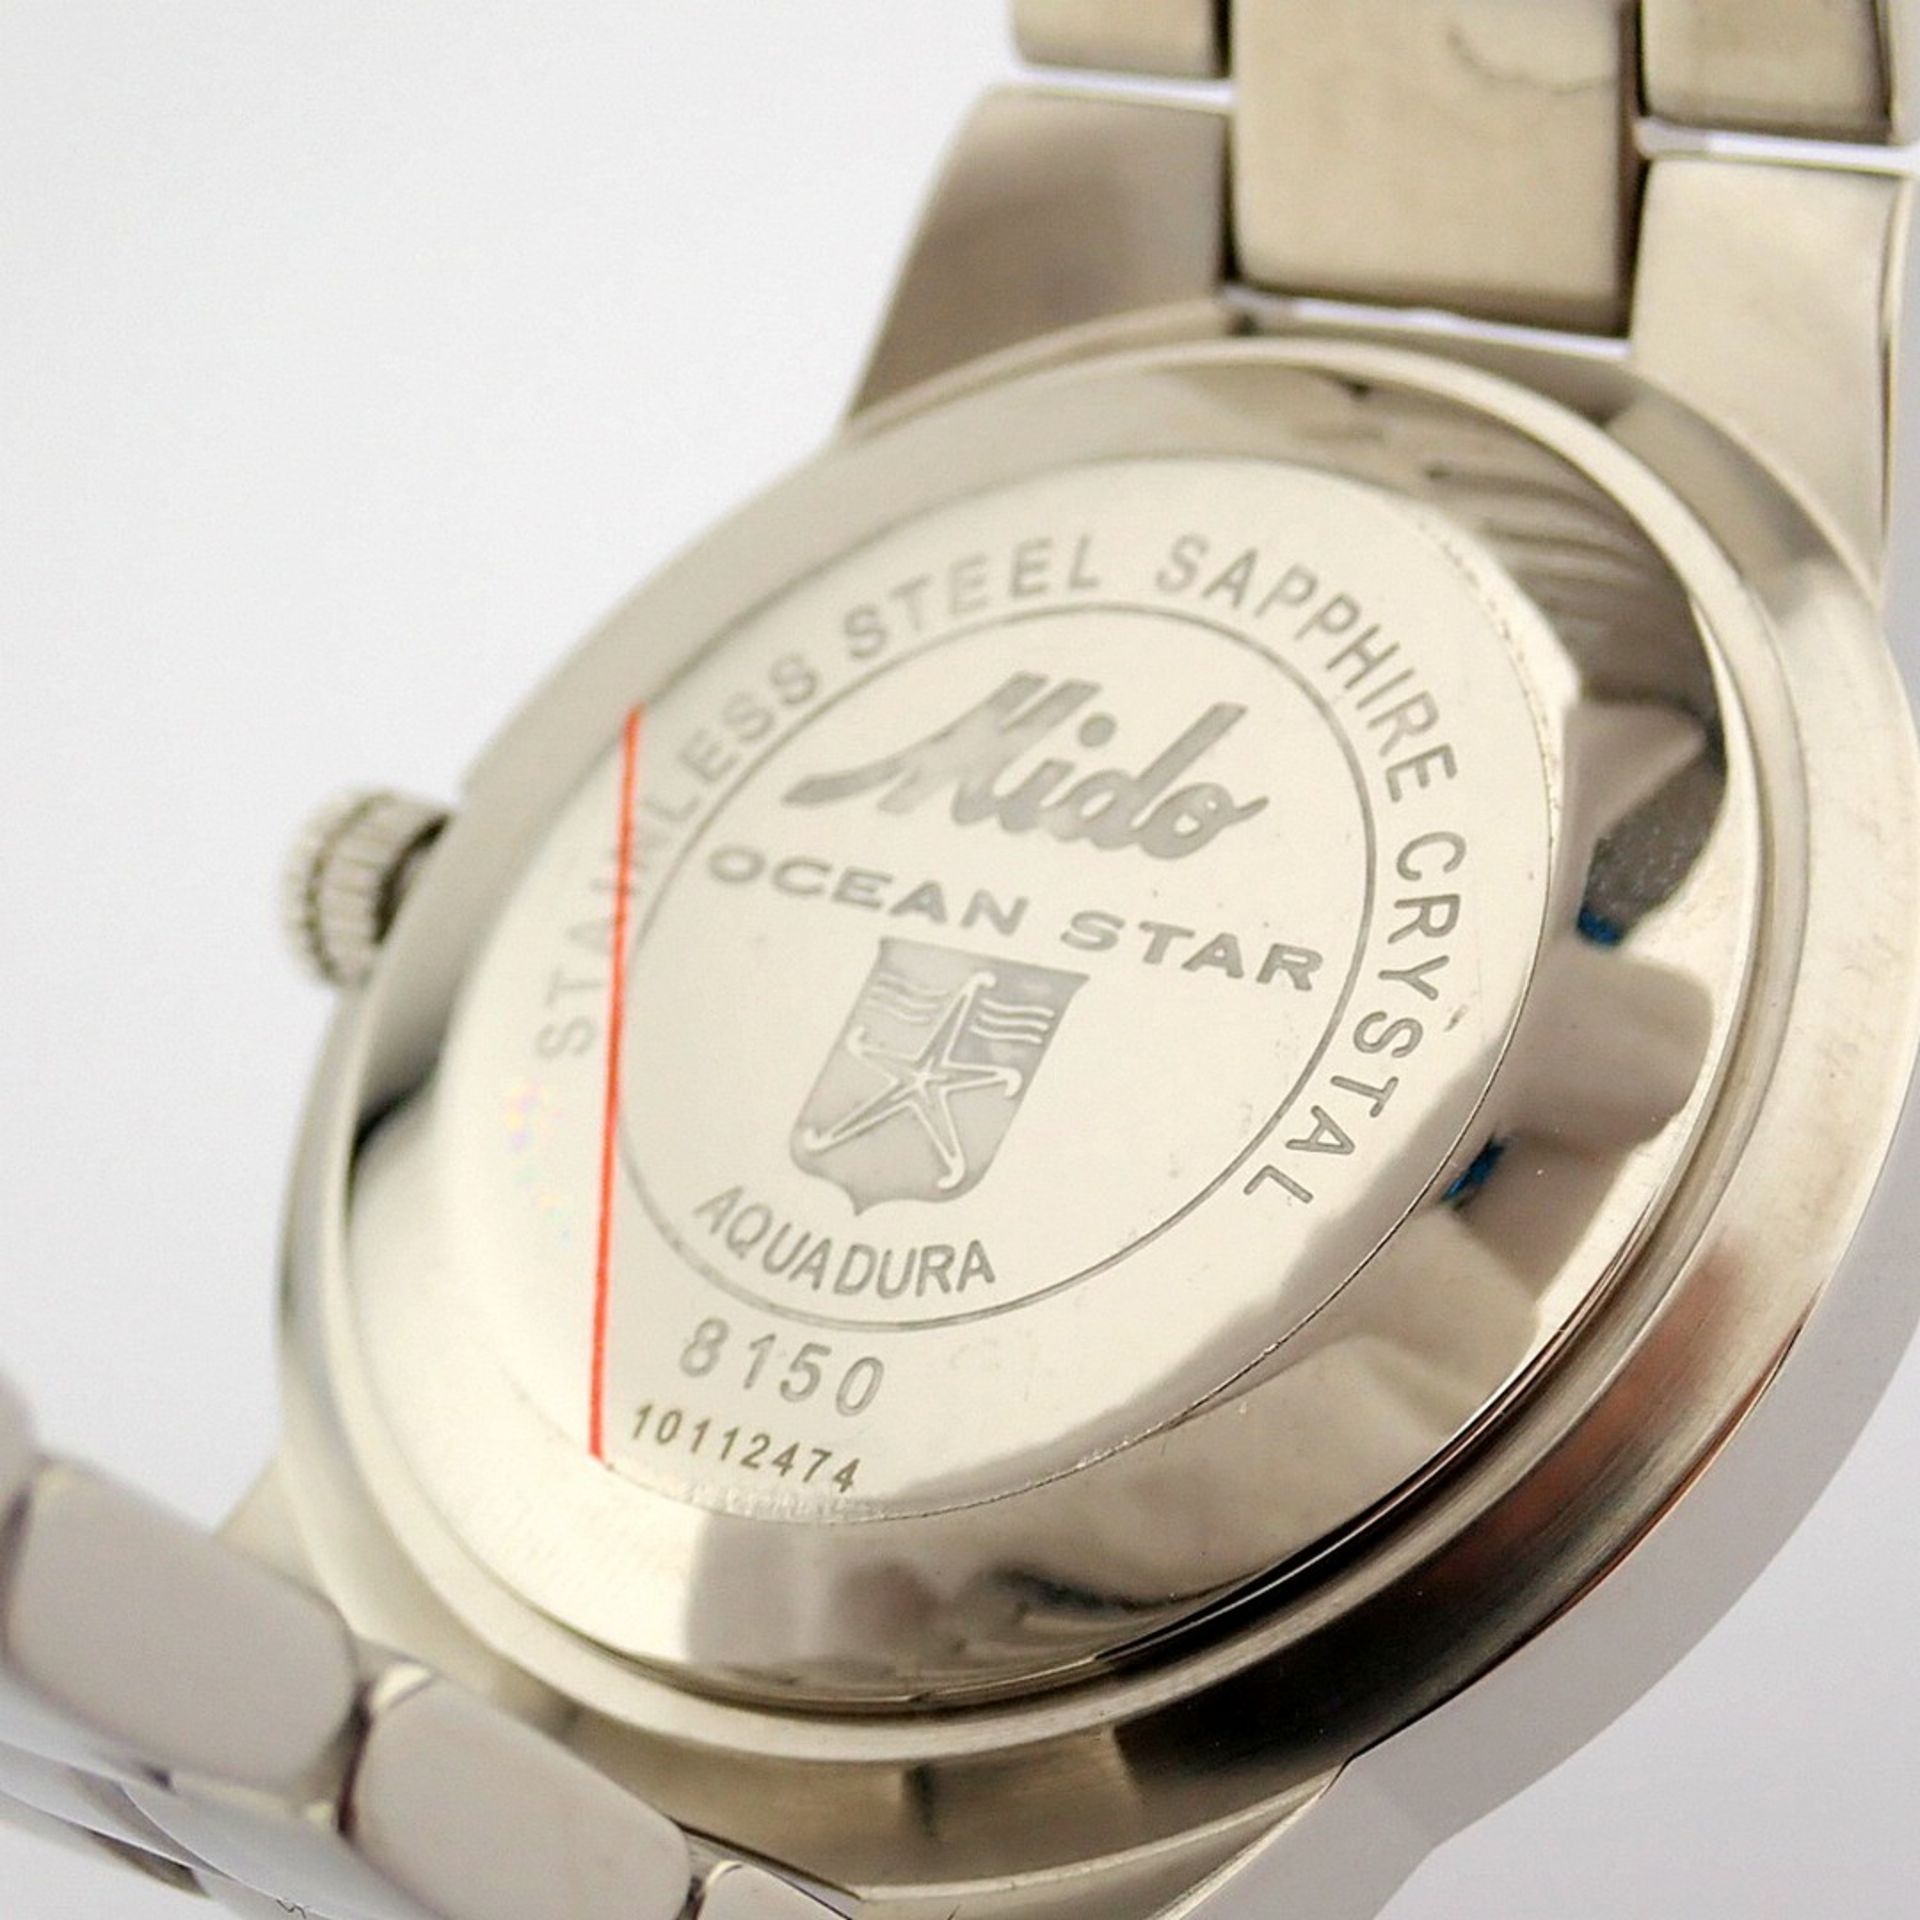 Mido / Ocean Star Aquadura (Brand New) - Gentlemen's Steel Wristwatch - Image 11 of 12